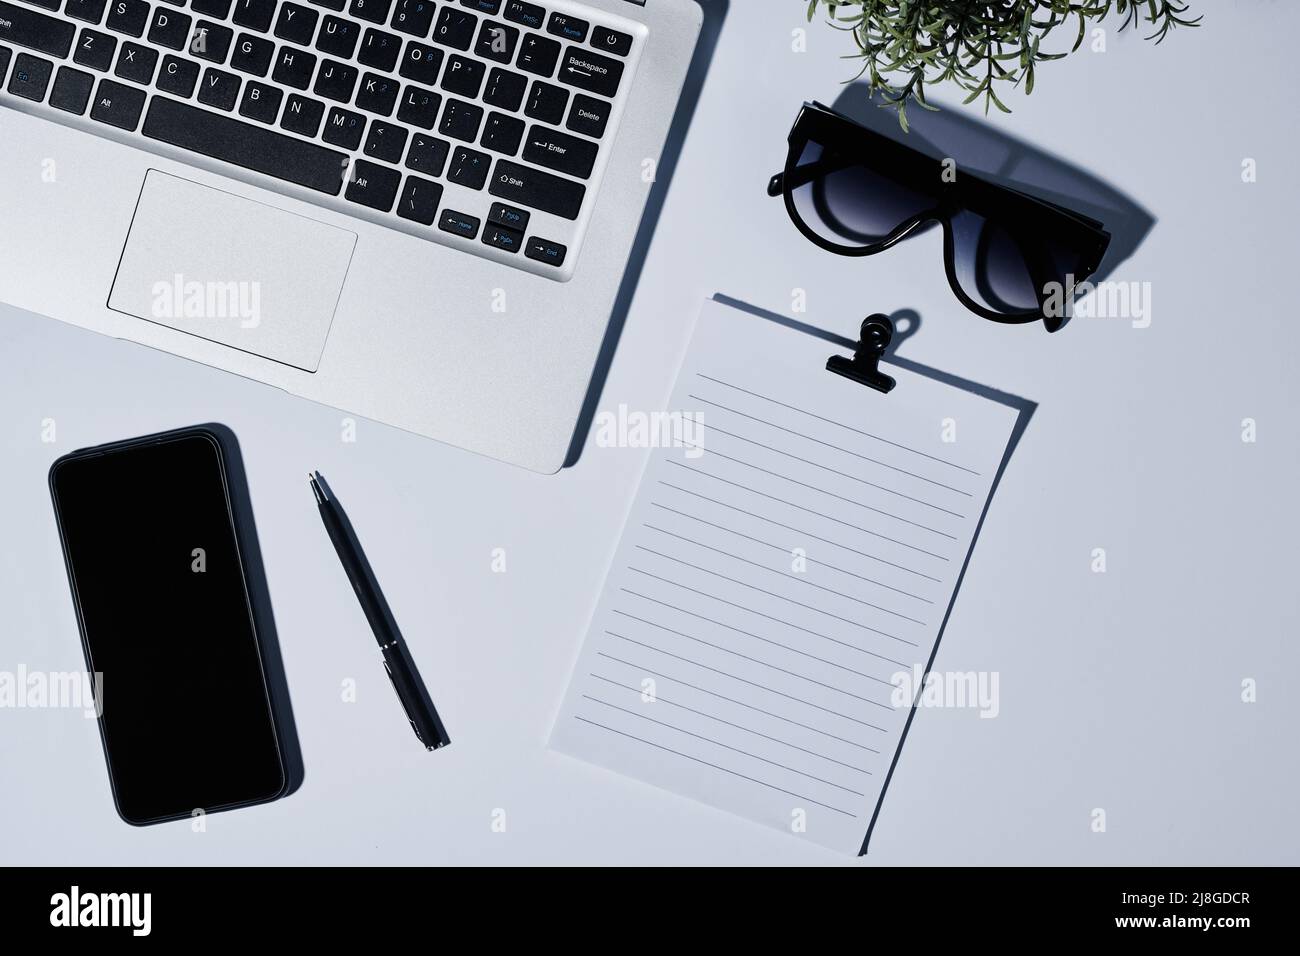 Composición del teclado del portátil, papel en blanco con clip, gafas de  sol, bolígrafo y smartphone en el lugar de trabajo de la persona de  negocios moderna Fotografía de stock - Alamy